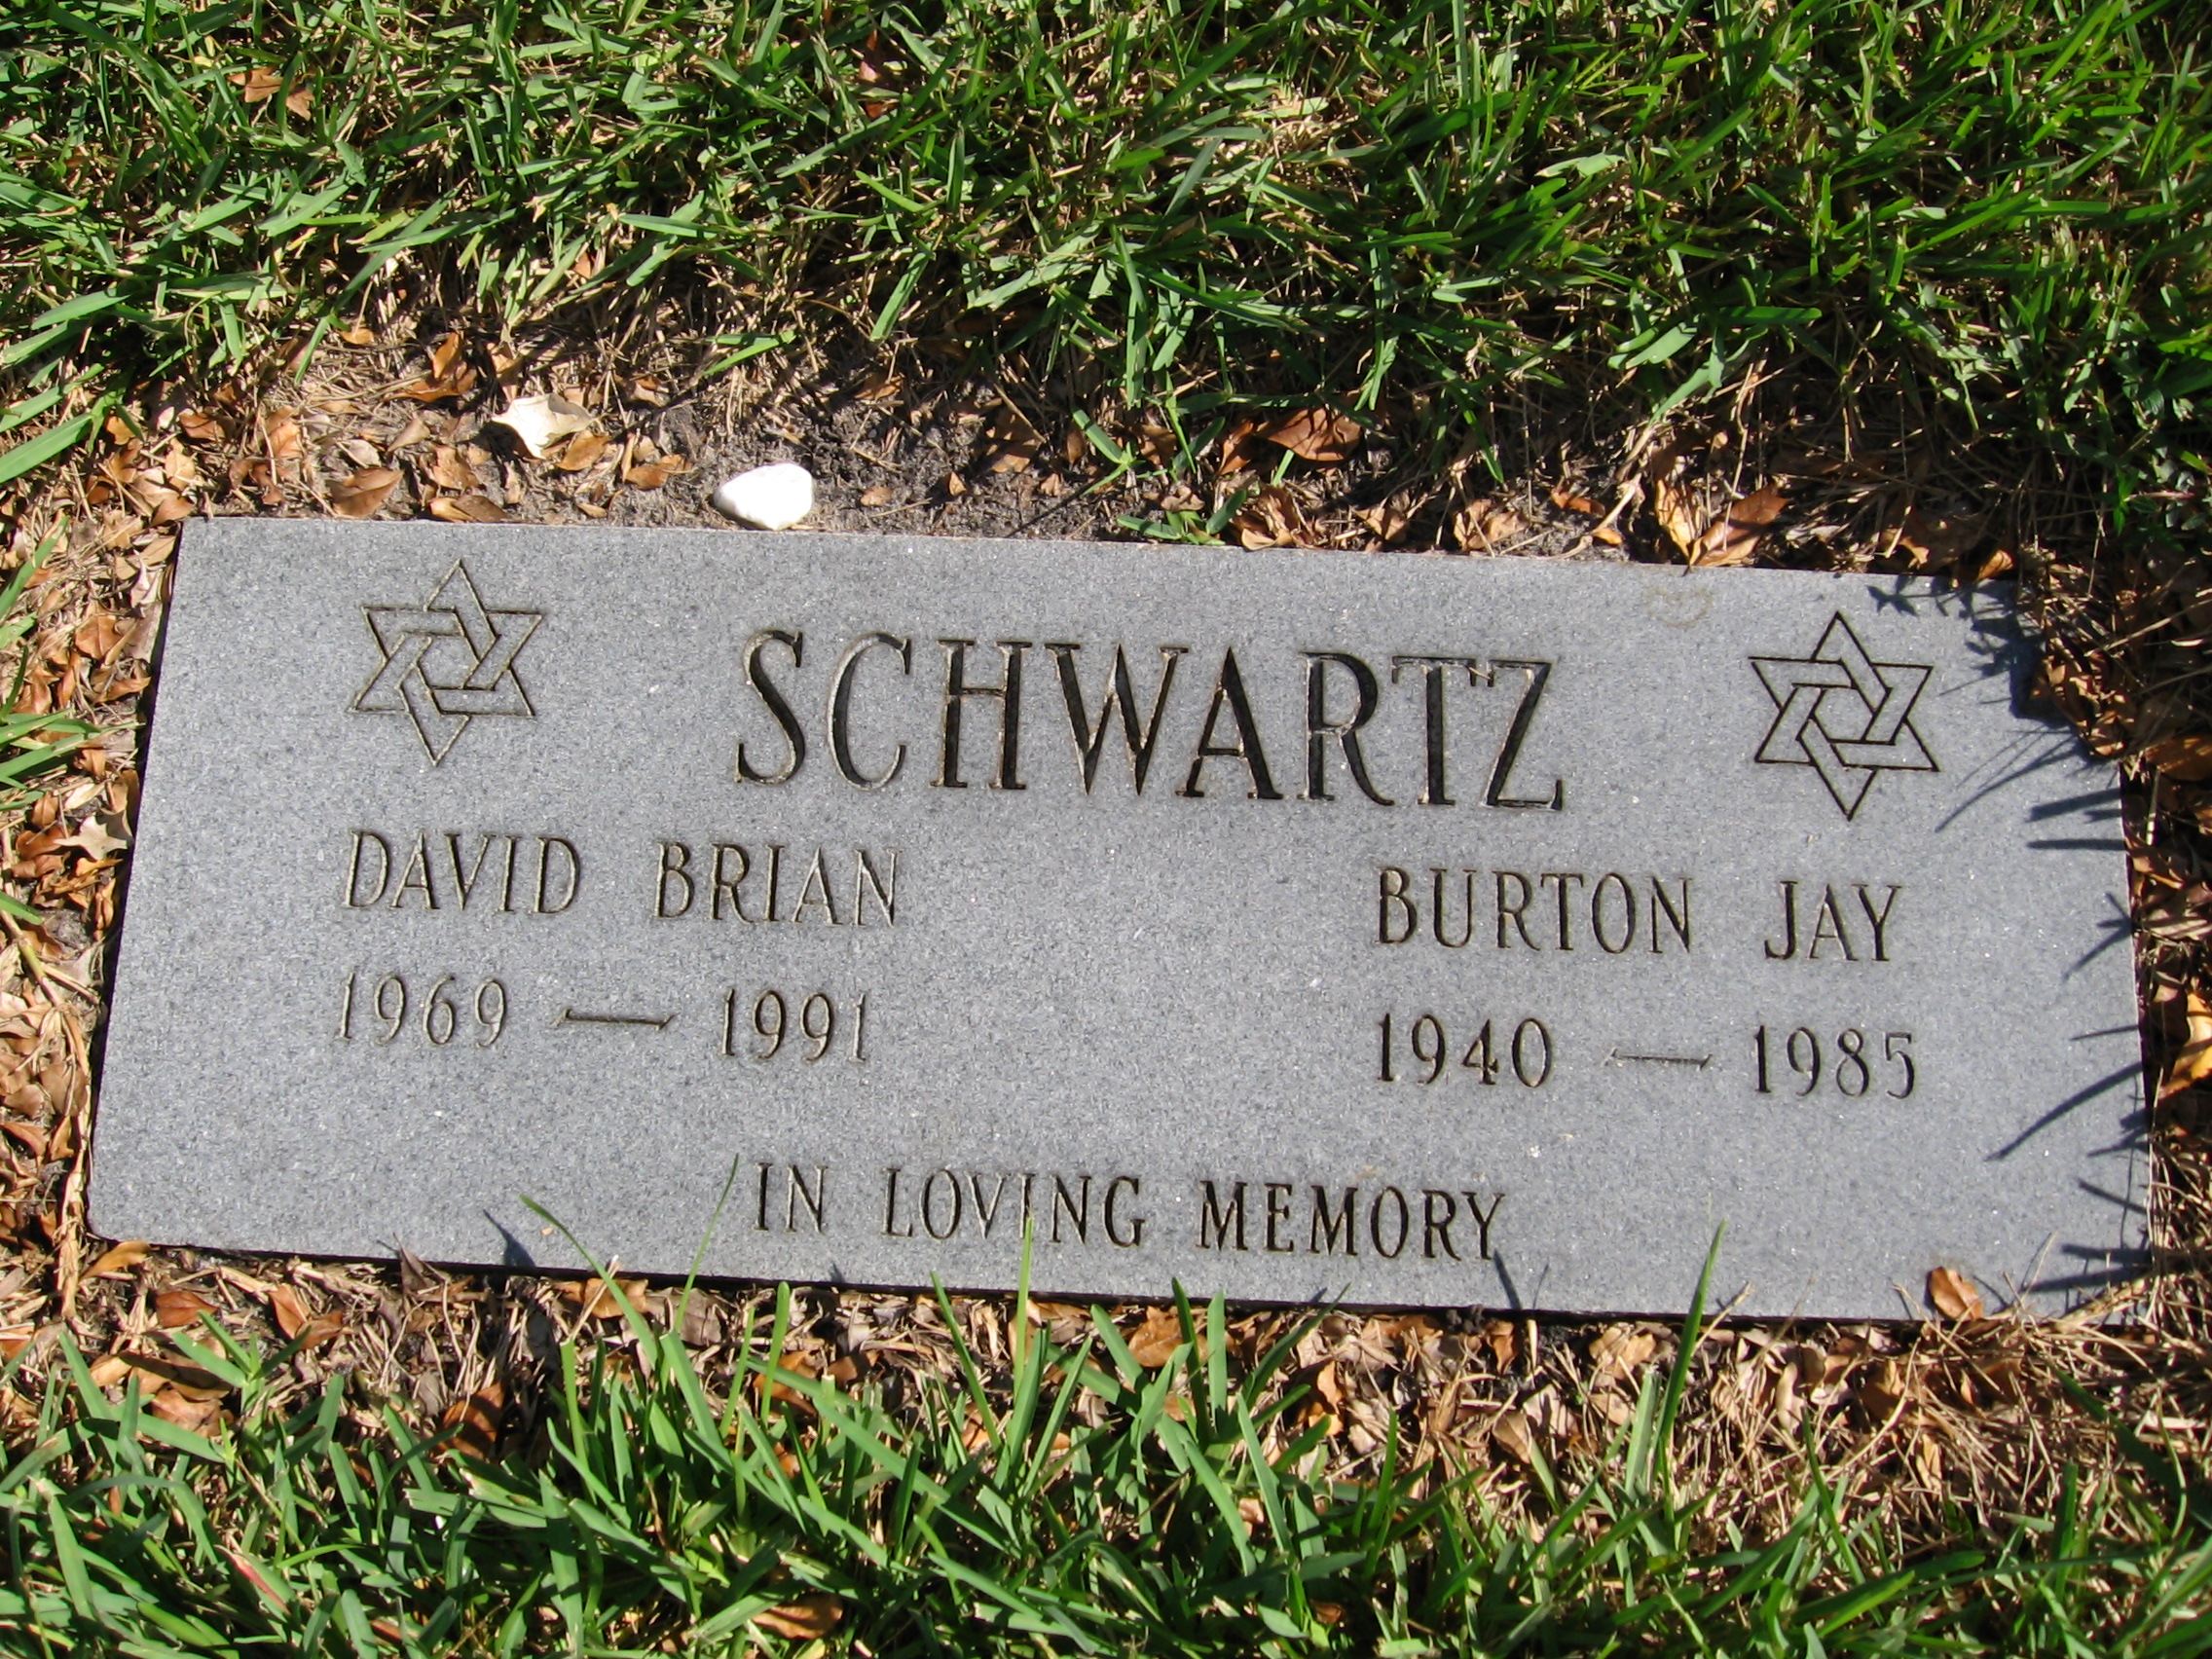 David Brian Schwartz